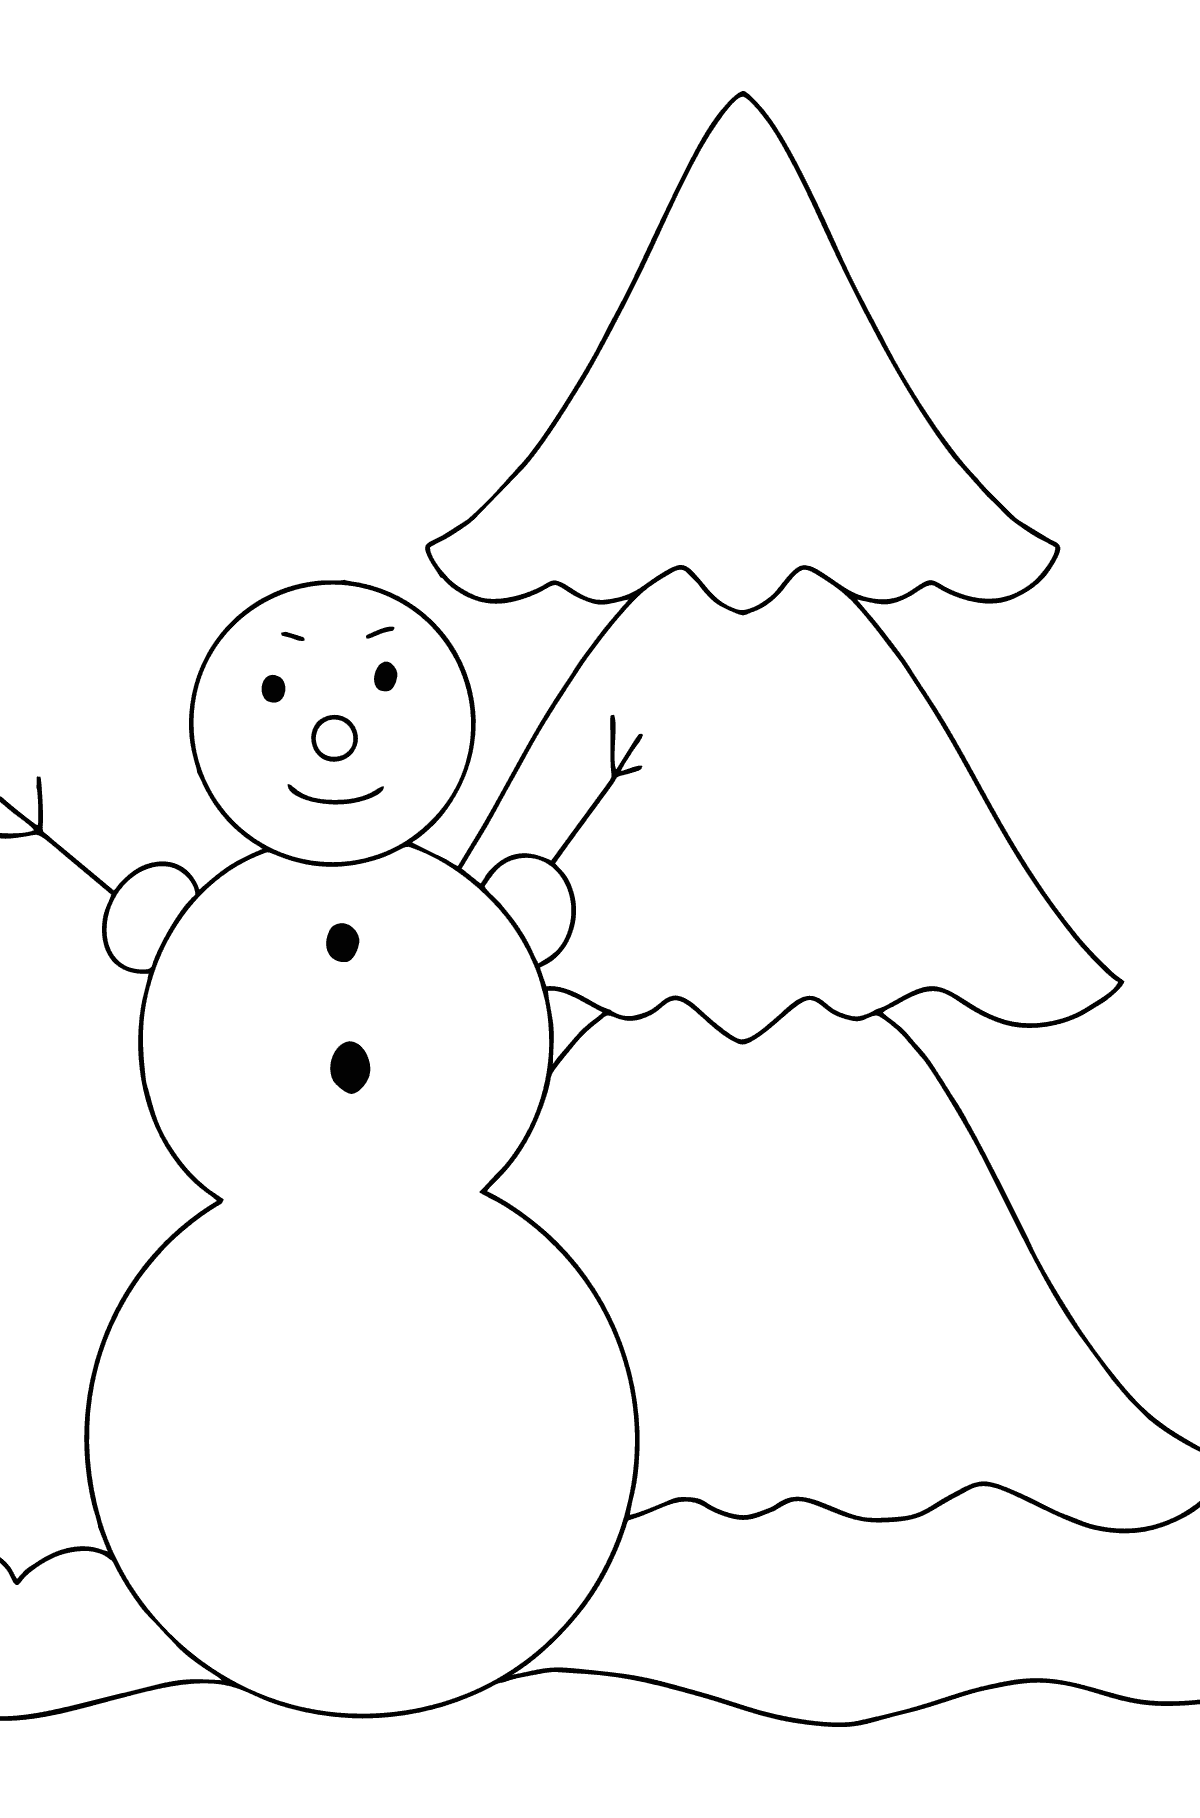 Coloriage - Bonhomme de neige et sapin de Noël - Coloriages pour les Enfants